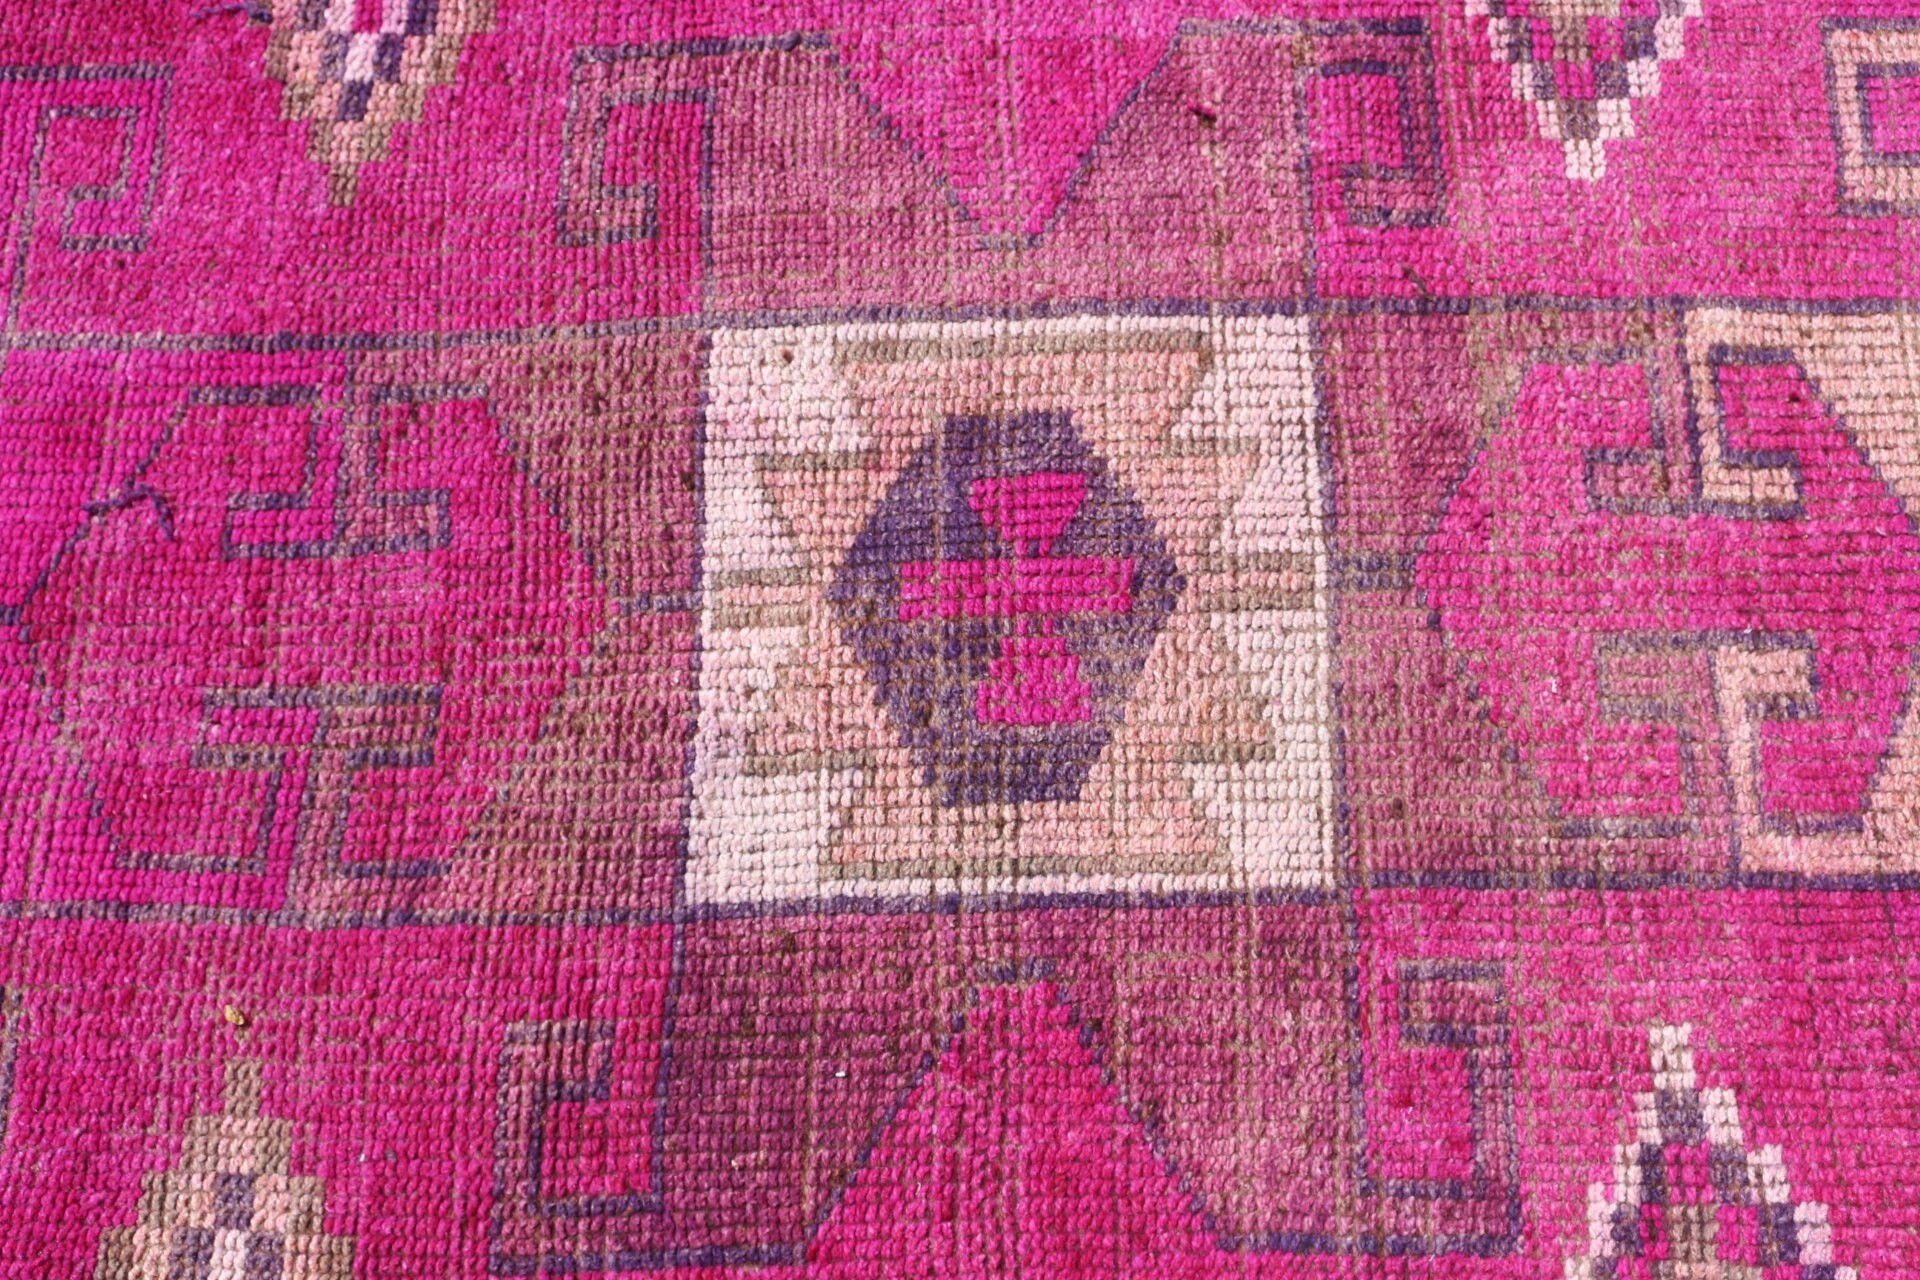 Rugs for Kitchen, Turkish Rug, Stair Rug, Cool Rug, 3x10.2 ft Runner Rugs, Hallway Rug, Pink Antique Rugs, Wool Rug, Cute Rug, Vintage Rug